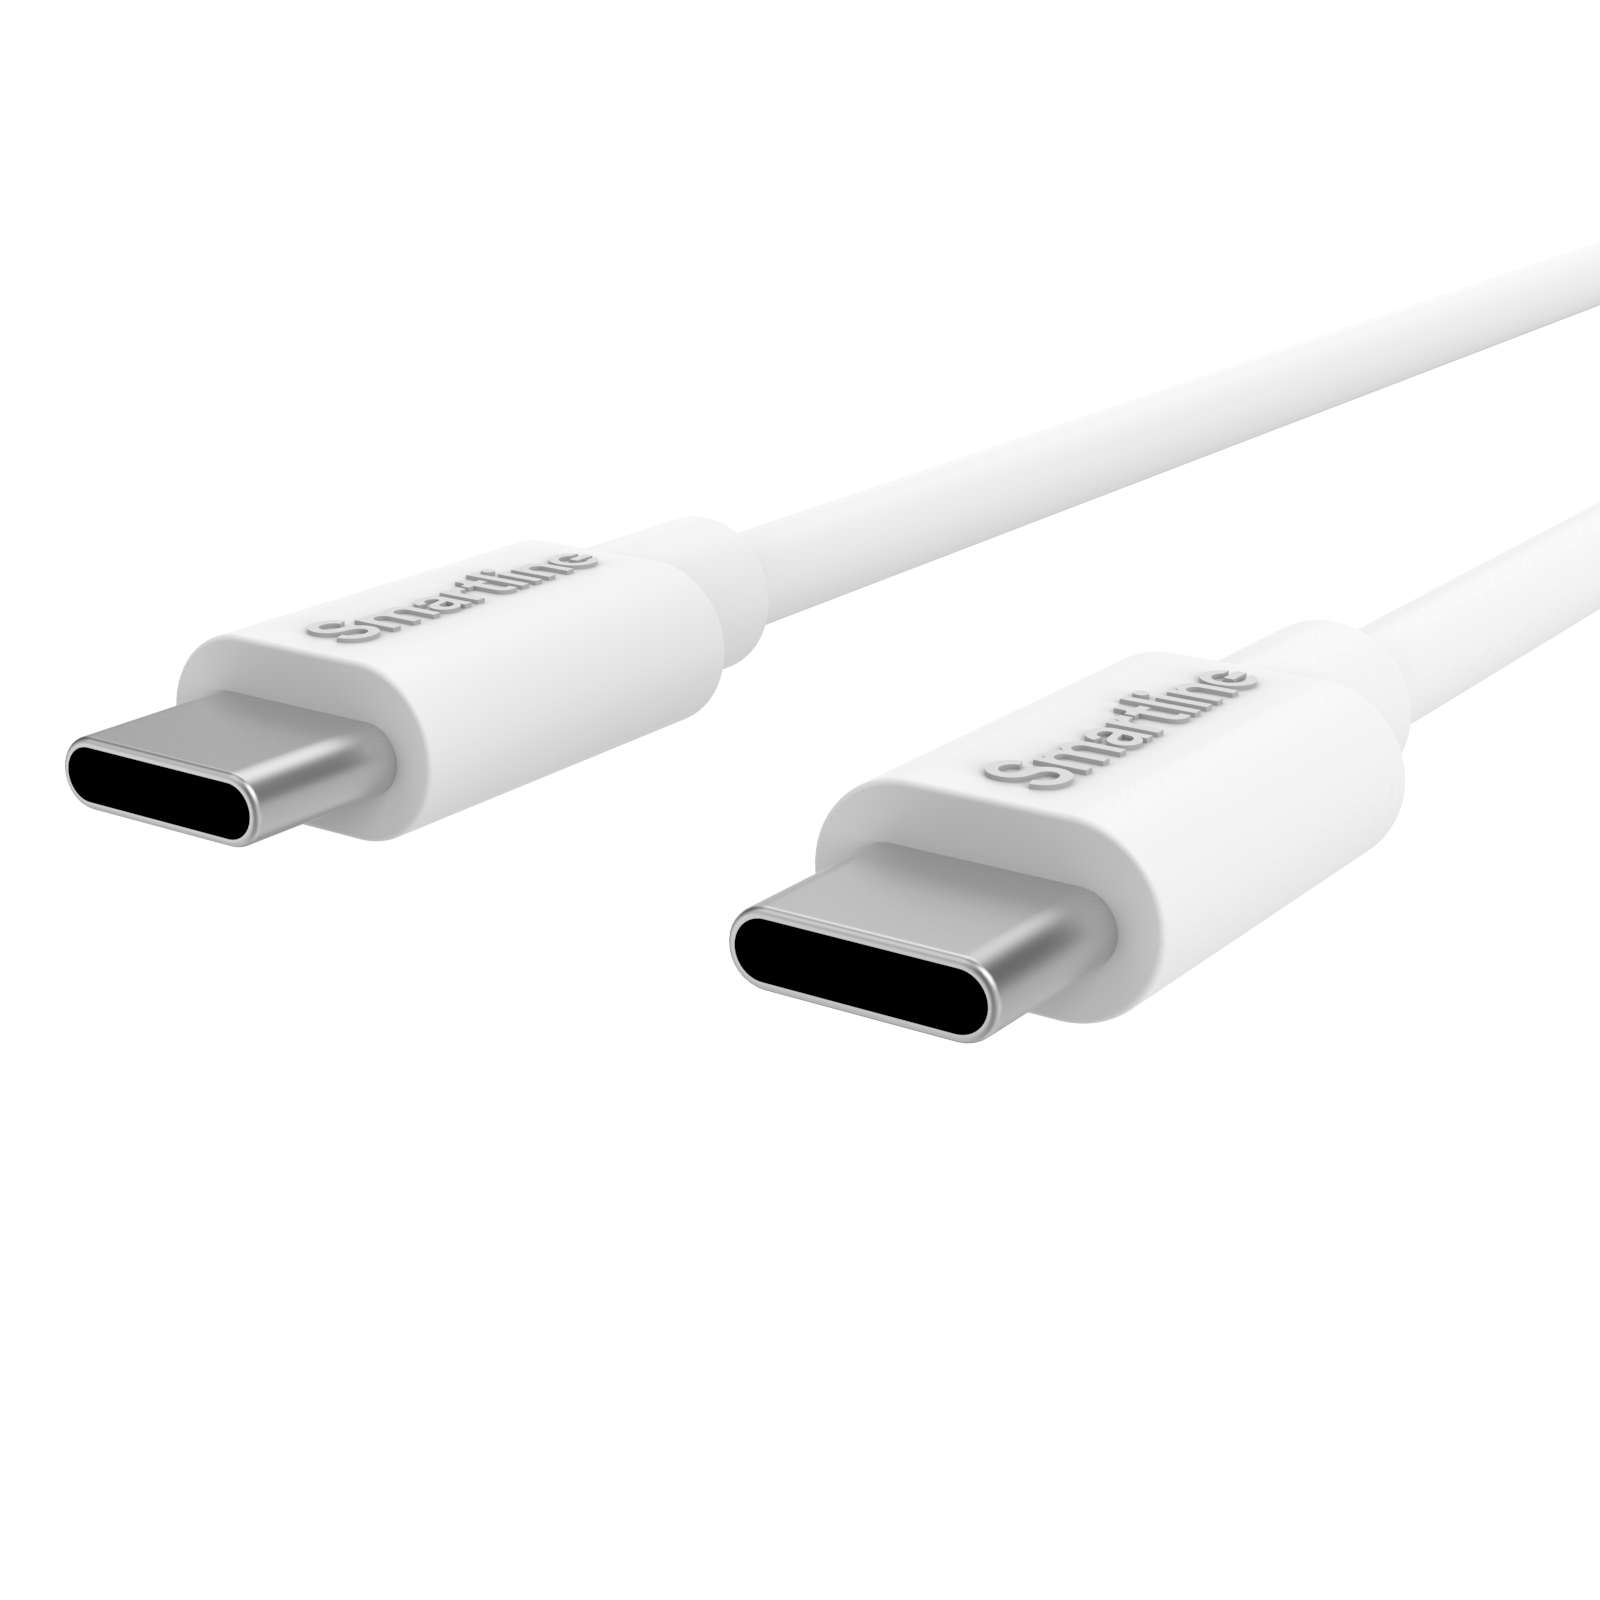 Cargador completo para Google Pixel - Cable de 2m y cargador de pared USB-C - Smartline